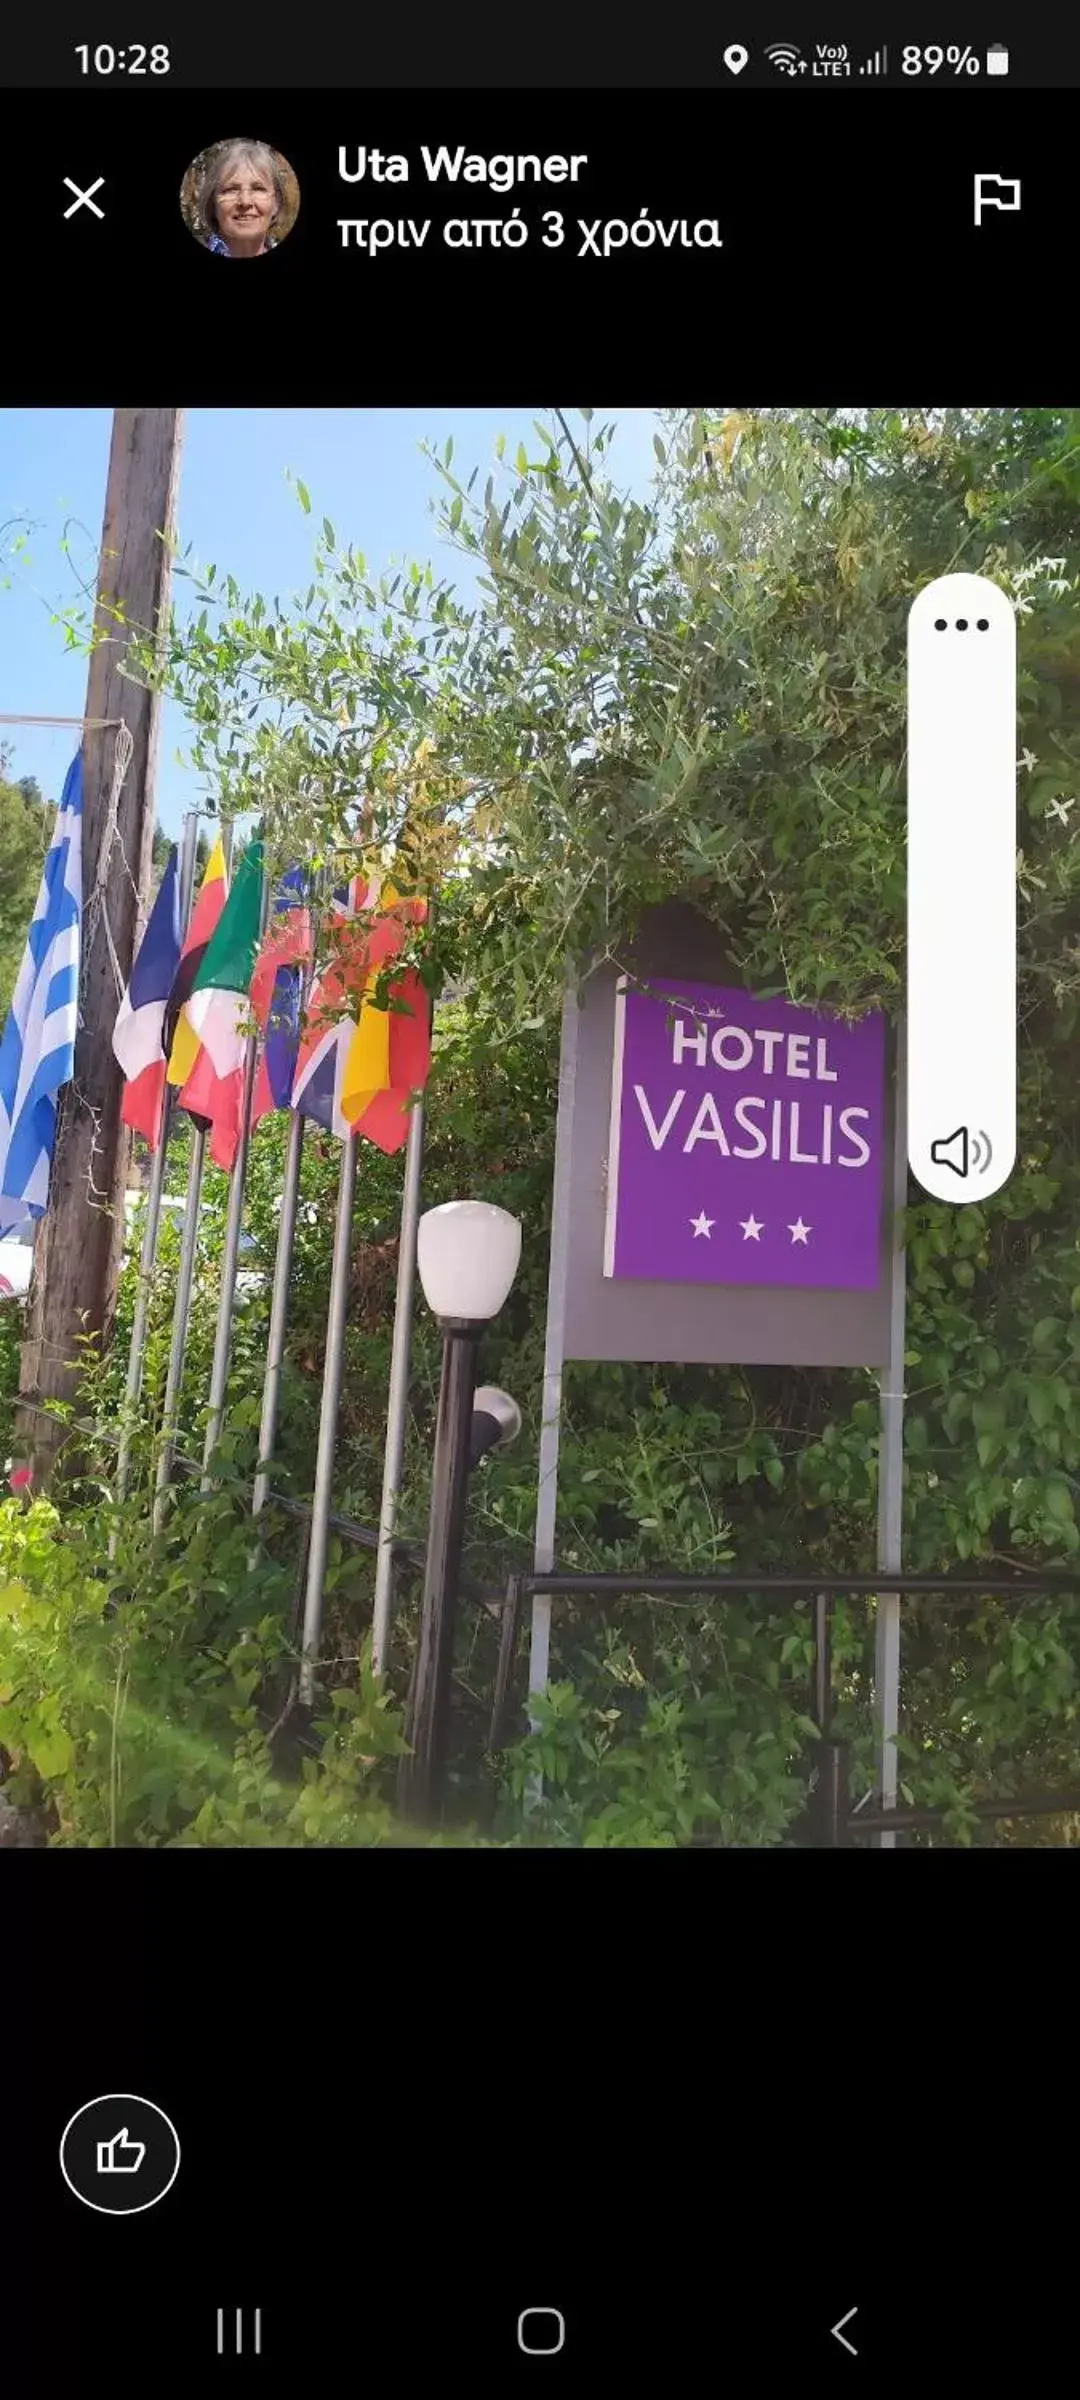 Facade/entrance in Hotel Vasilis